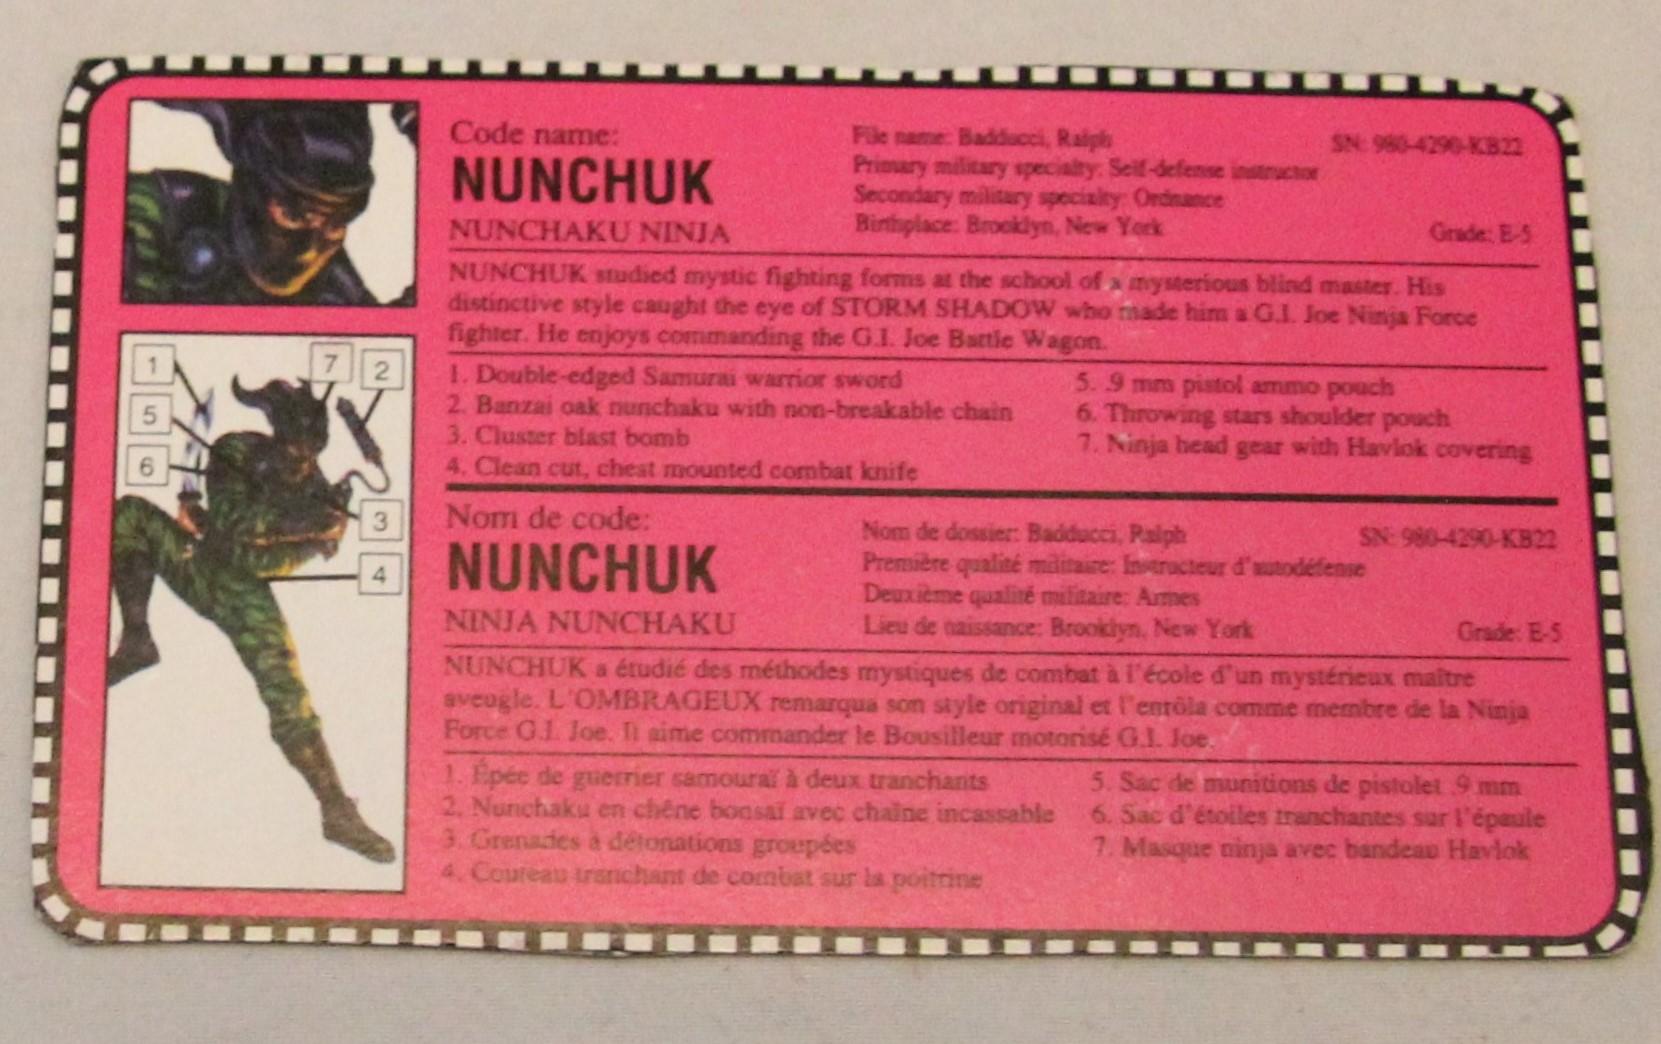 1992 nunchuk file card